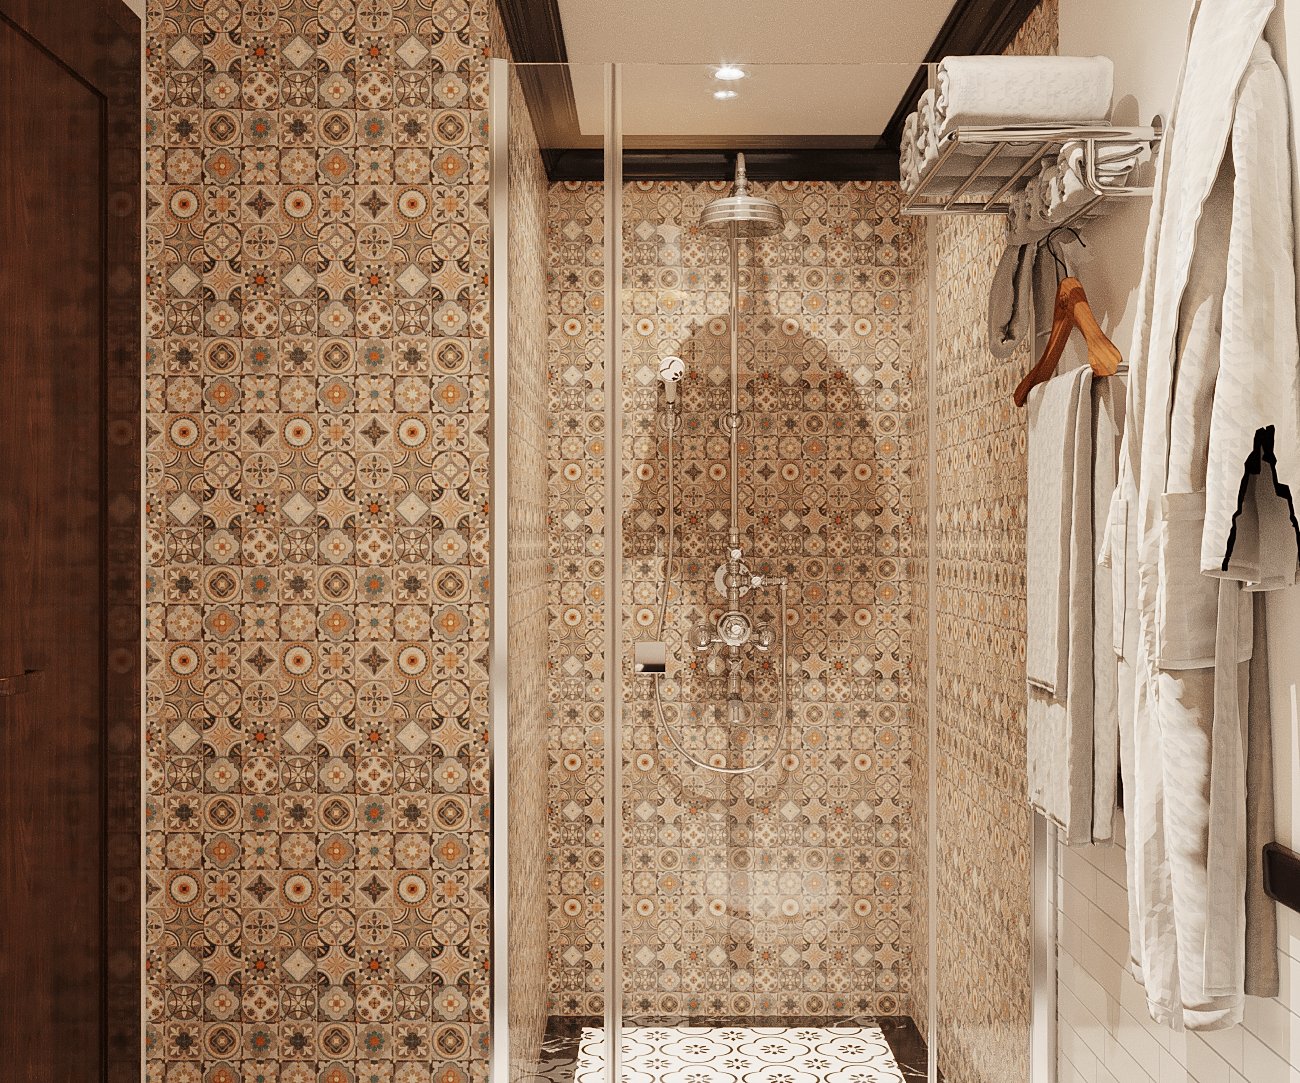 Trong căn hộ phong cách Indochine, buồng tắm đứng vách kính gây ấn tượng bởi gạch ốp tường hoa văn tinh tế, tông màu ấm áp.